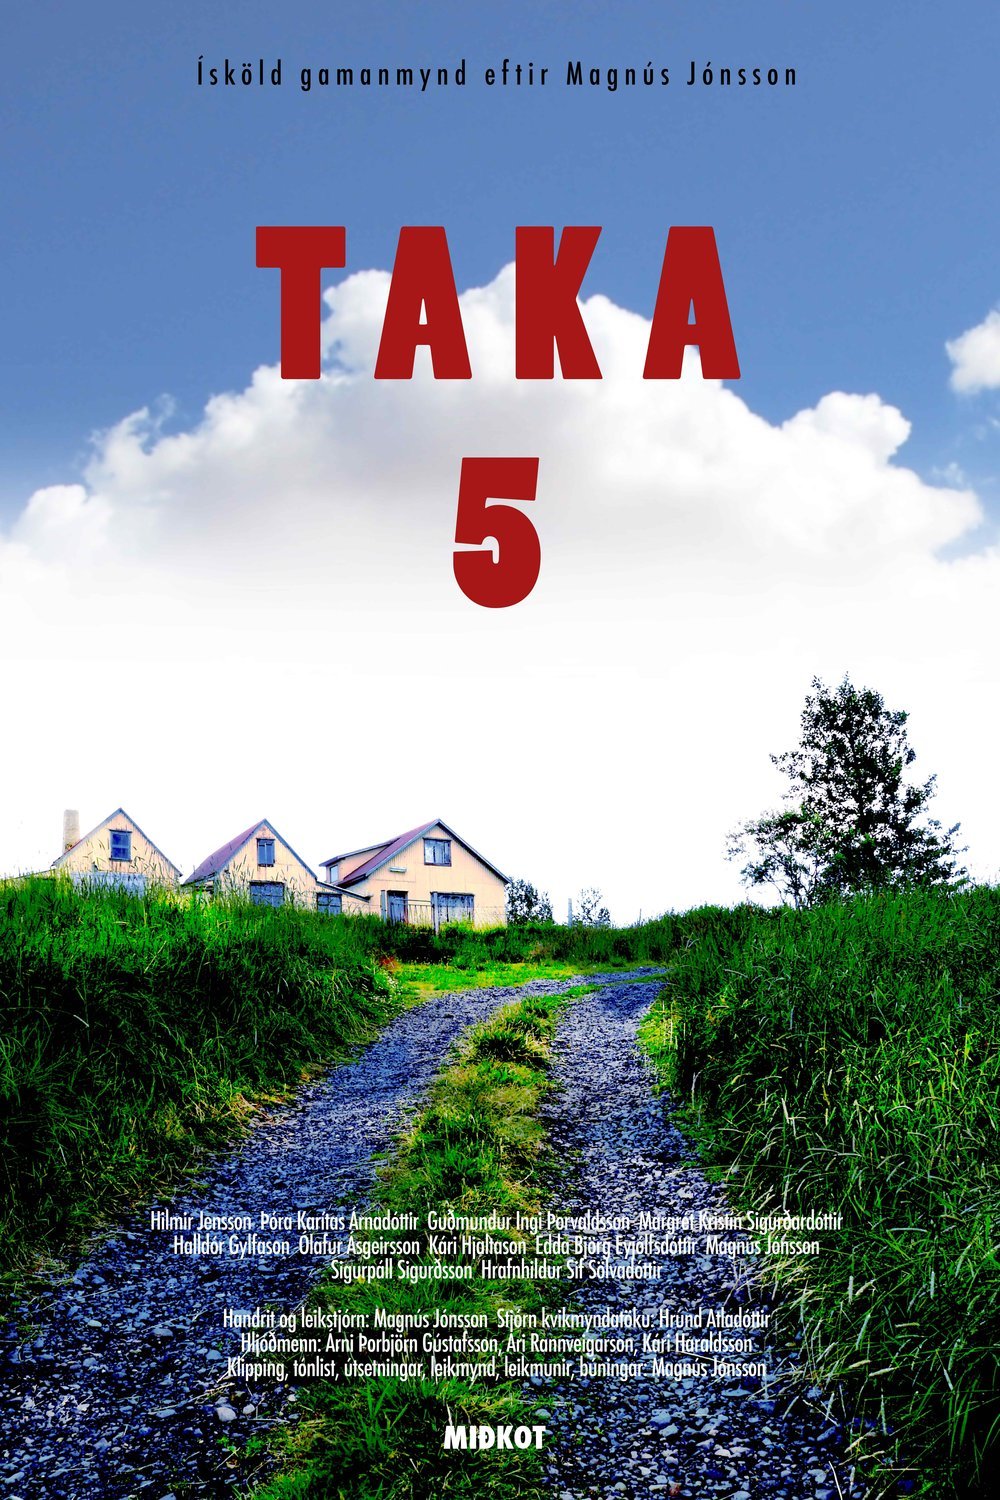 L'affiche originale du film Taka 5 en Islandais